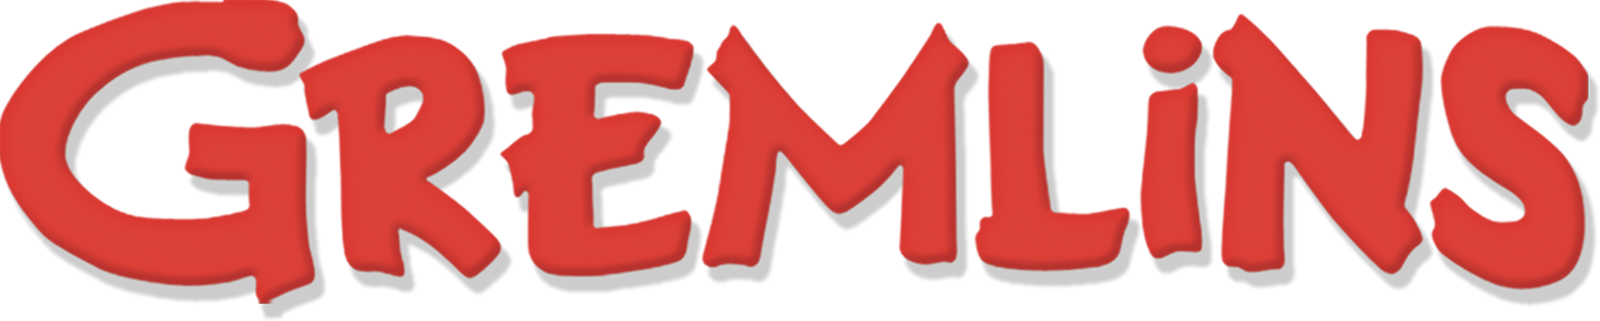 Gremlins logo.